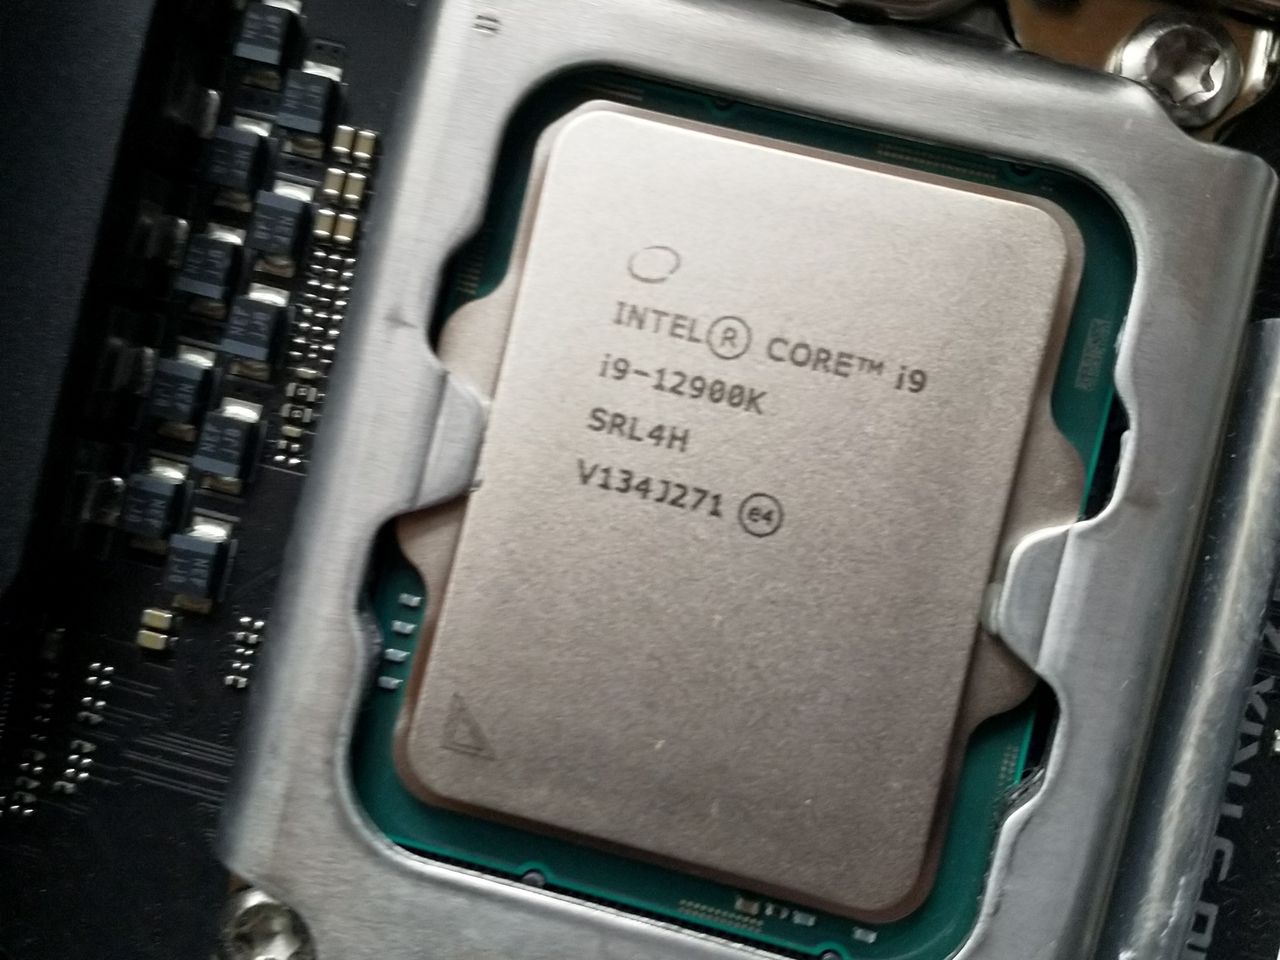 Intel Raptor Lake. Są benchmarki serii K oraz data premiery - Intel Core i9-12900K